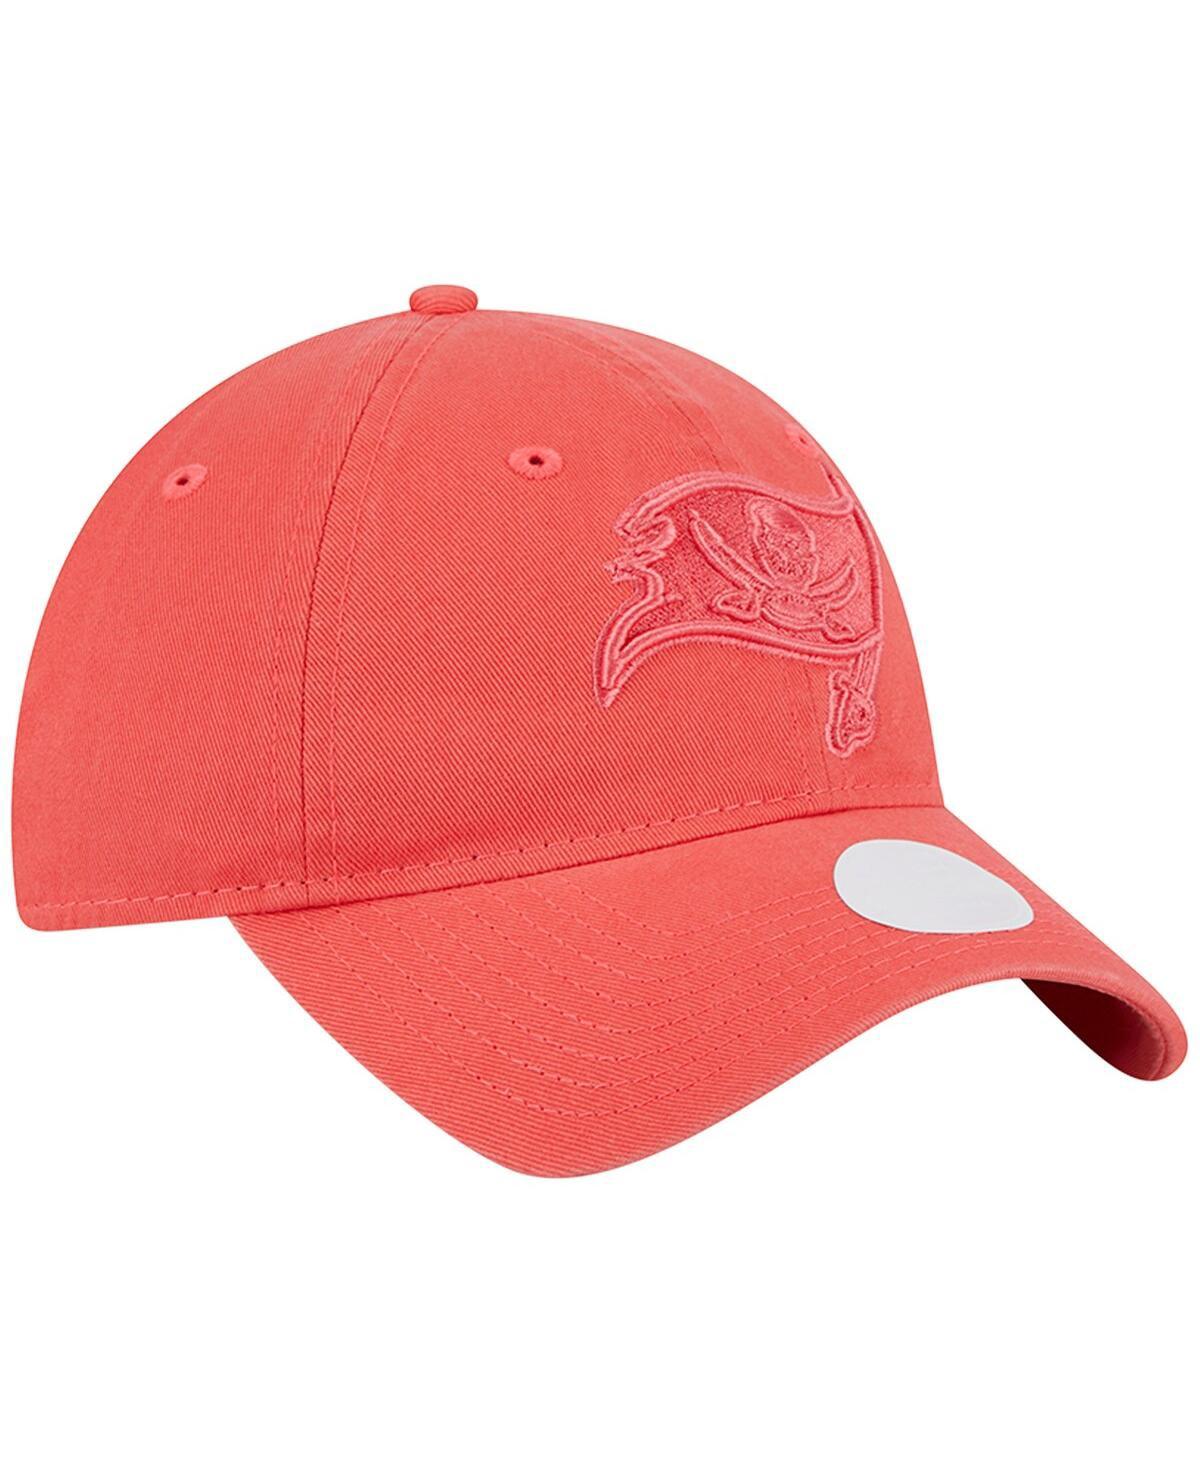 New Era Women's Red Tampa Bay Buccaneers Script 9TWENTY Adjustable Hat